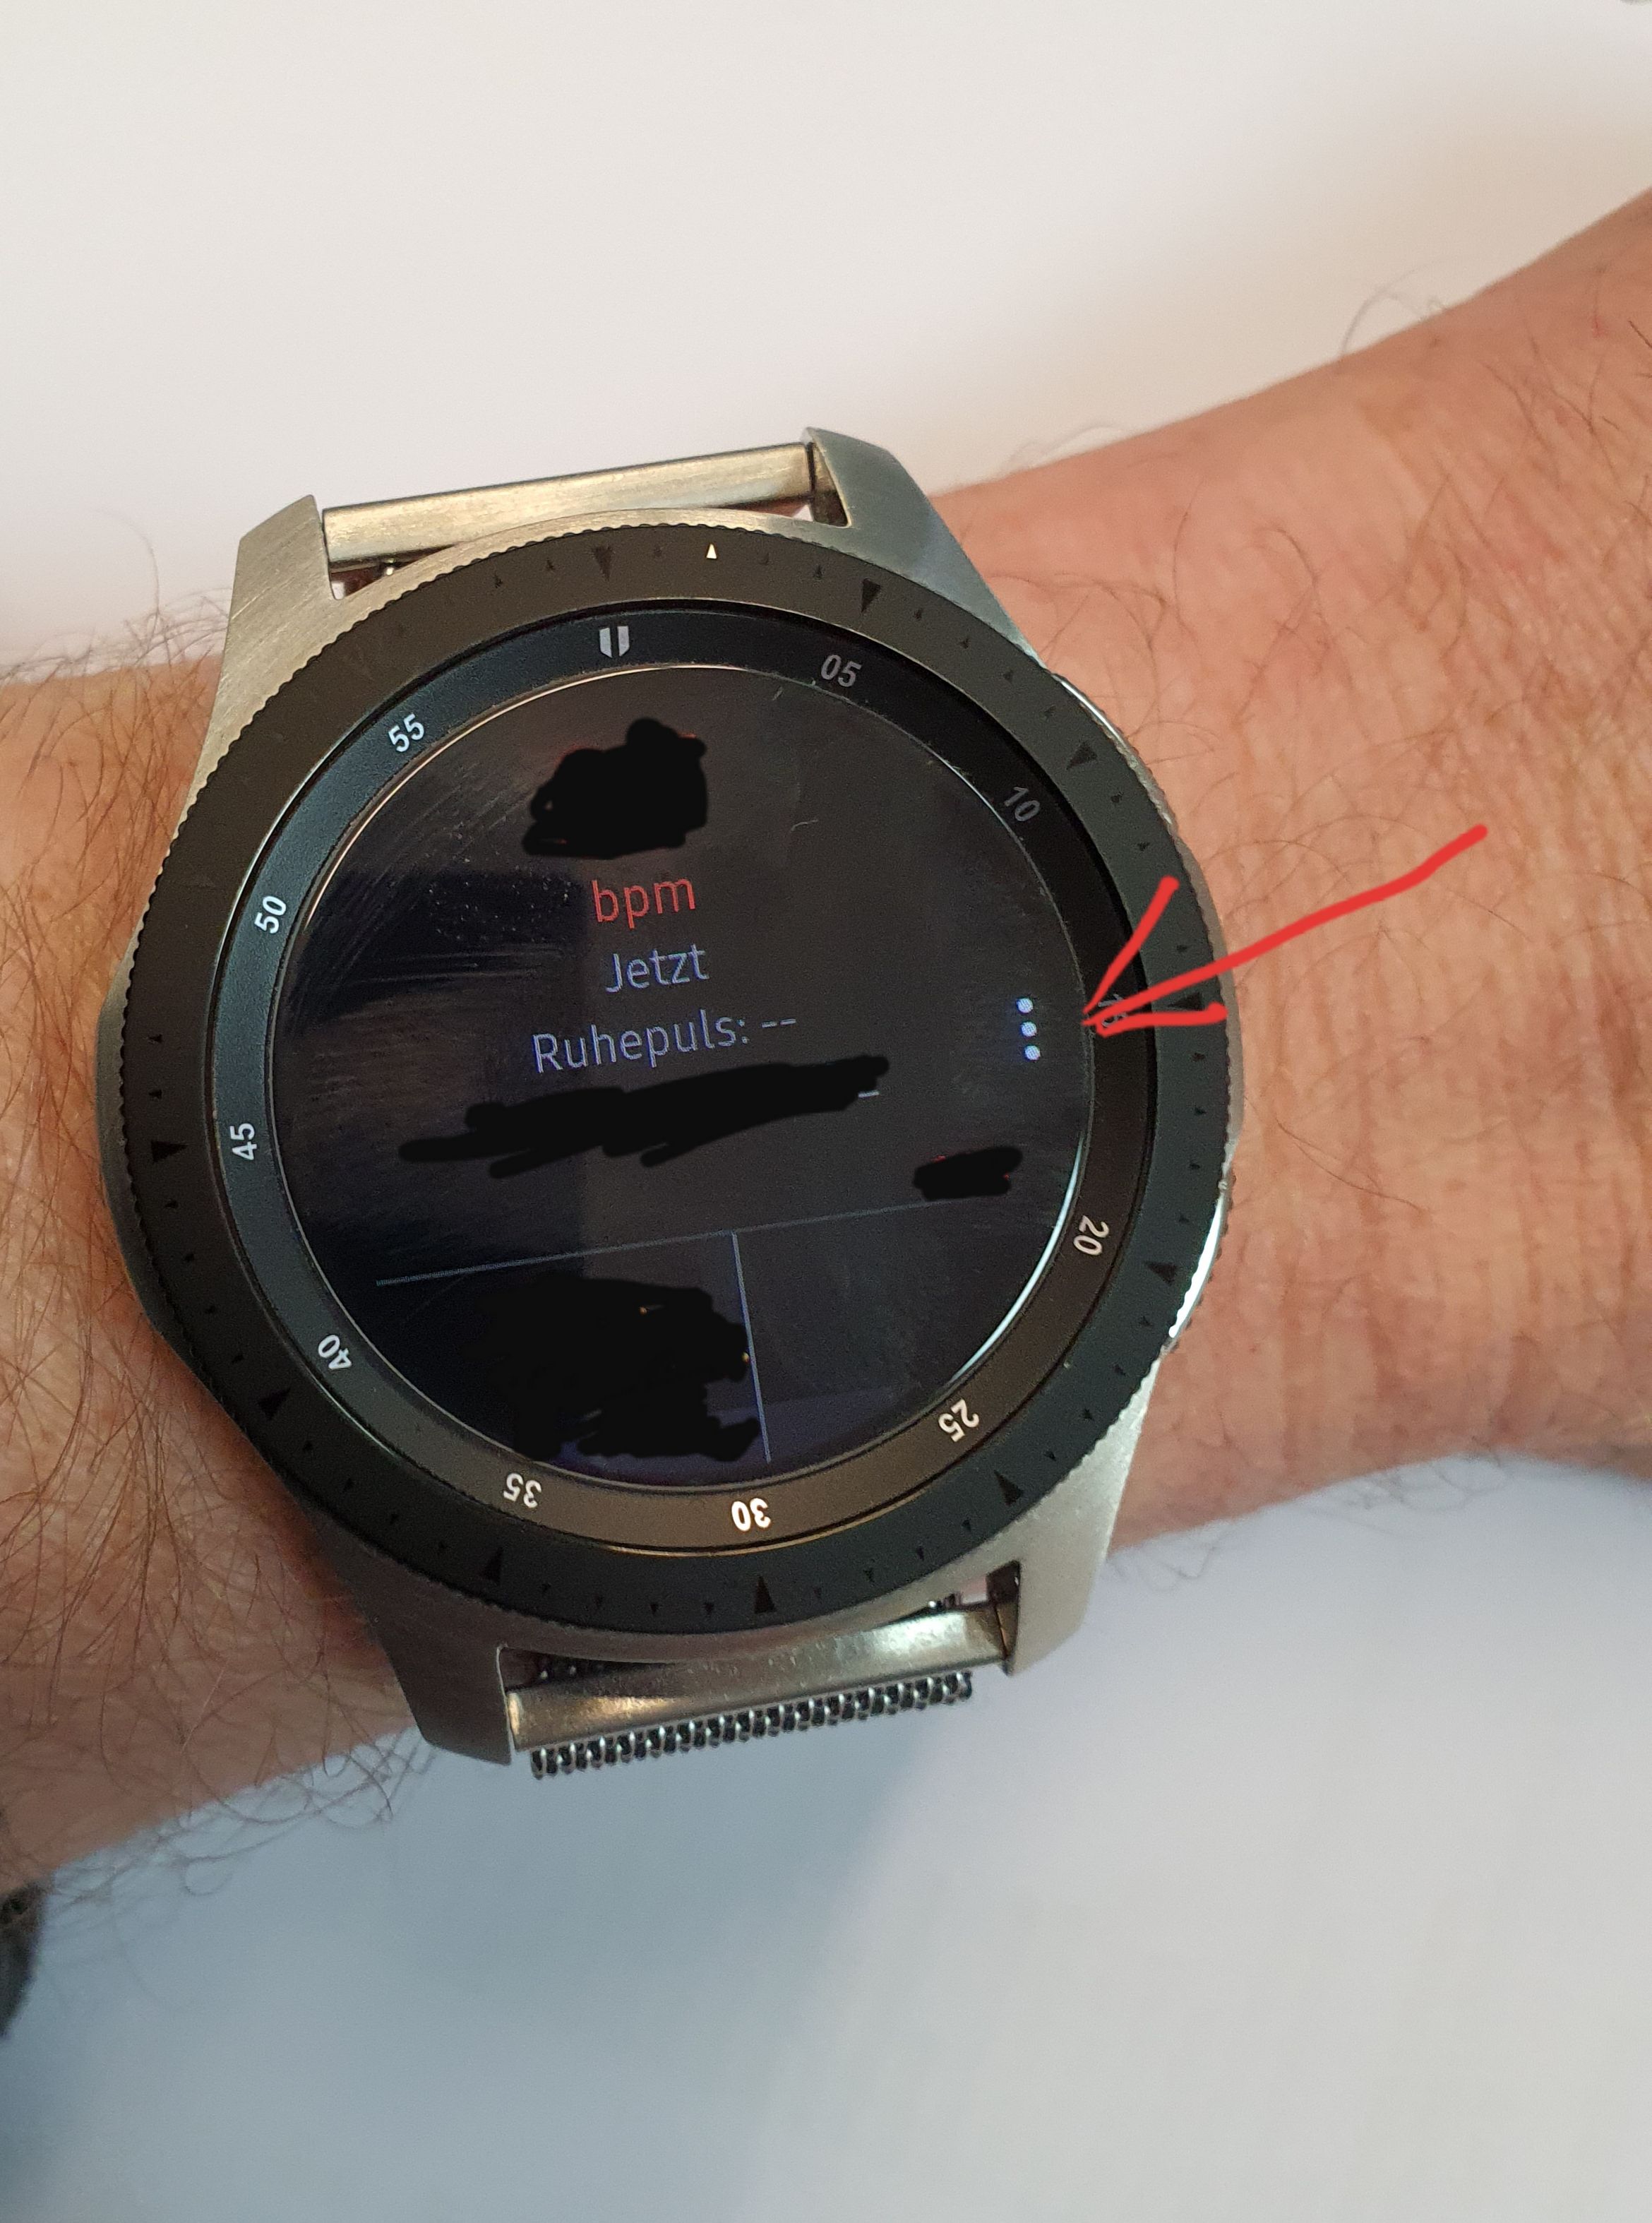 Gelöst: Galaxy Watch 46mm Pulsmessung - Samsung Community